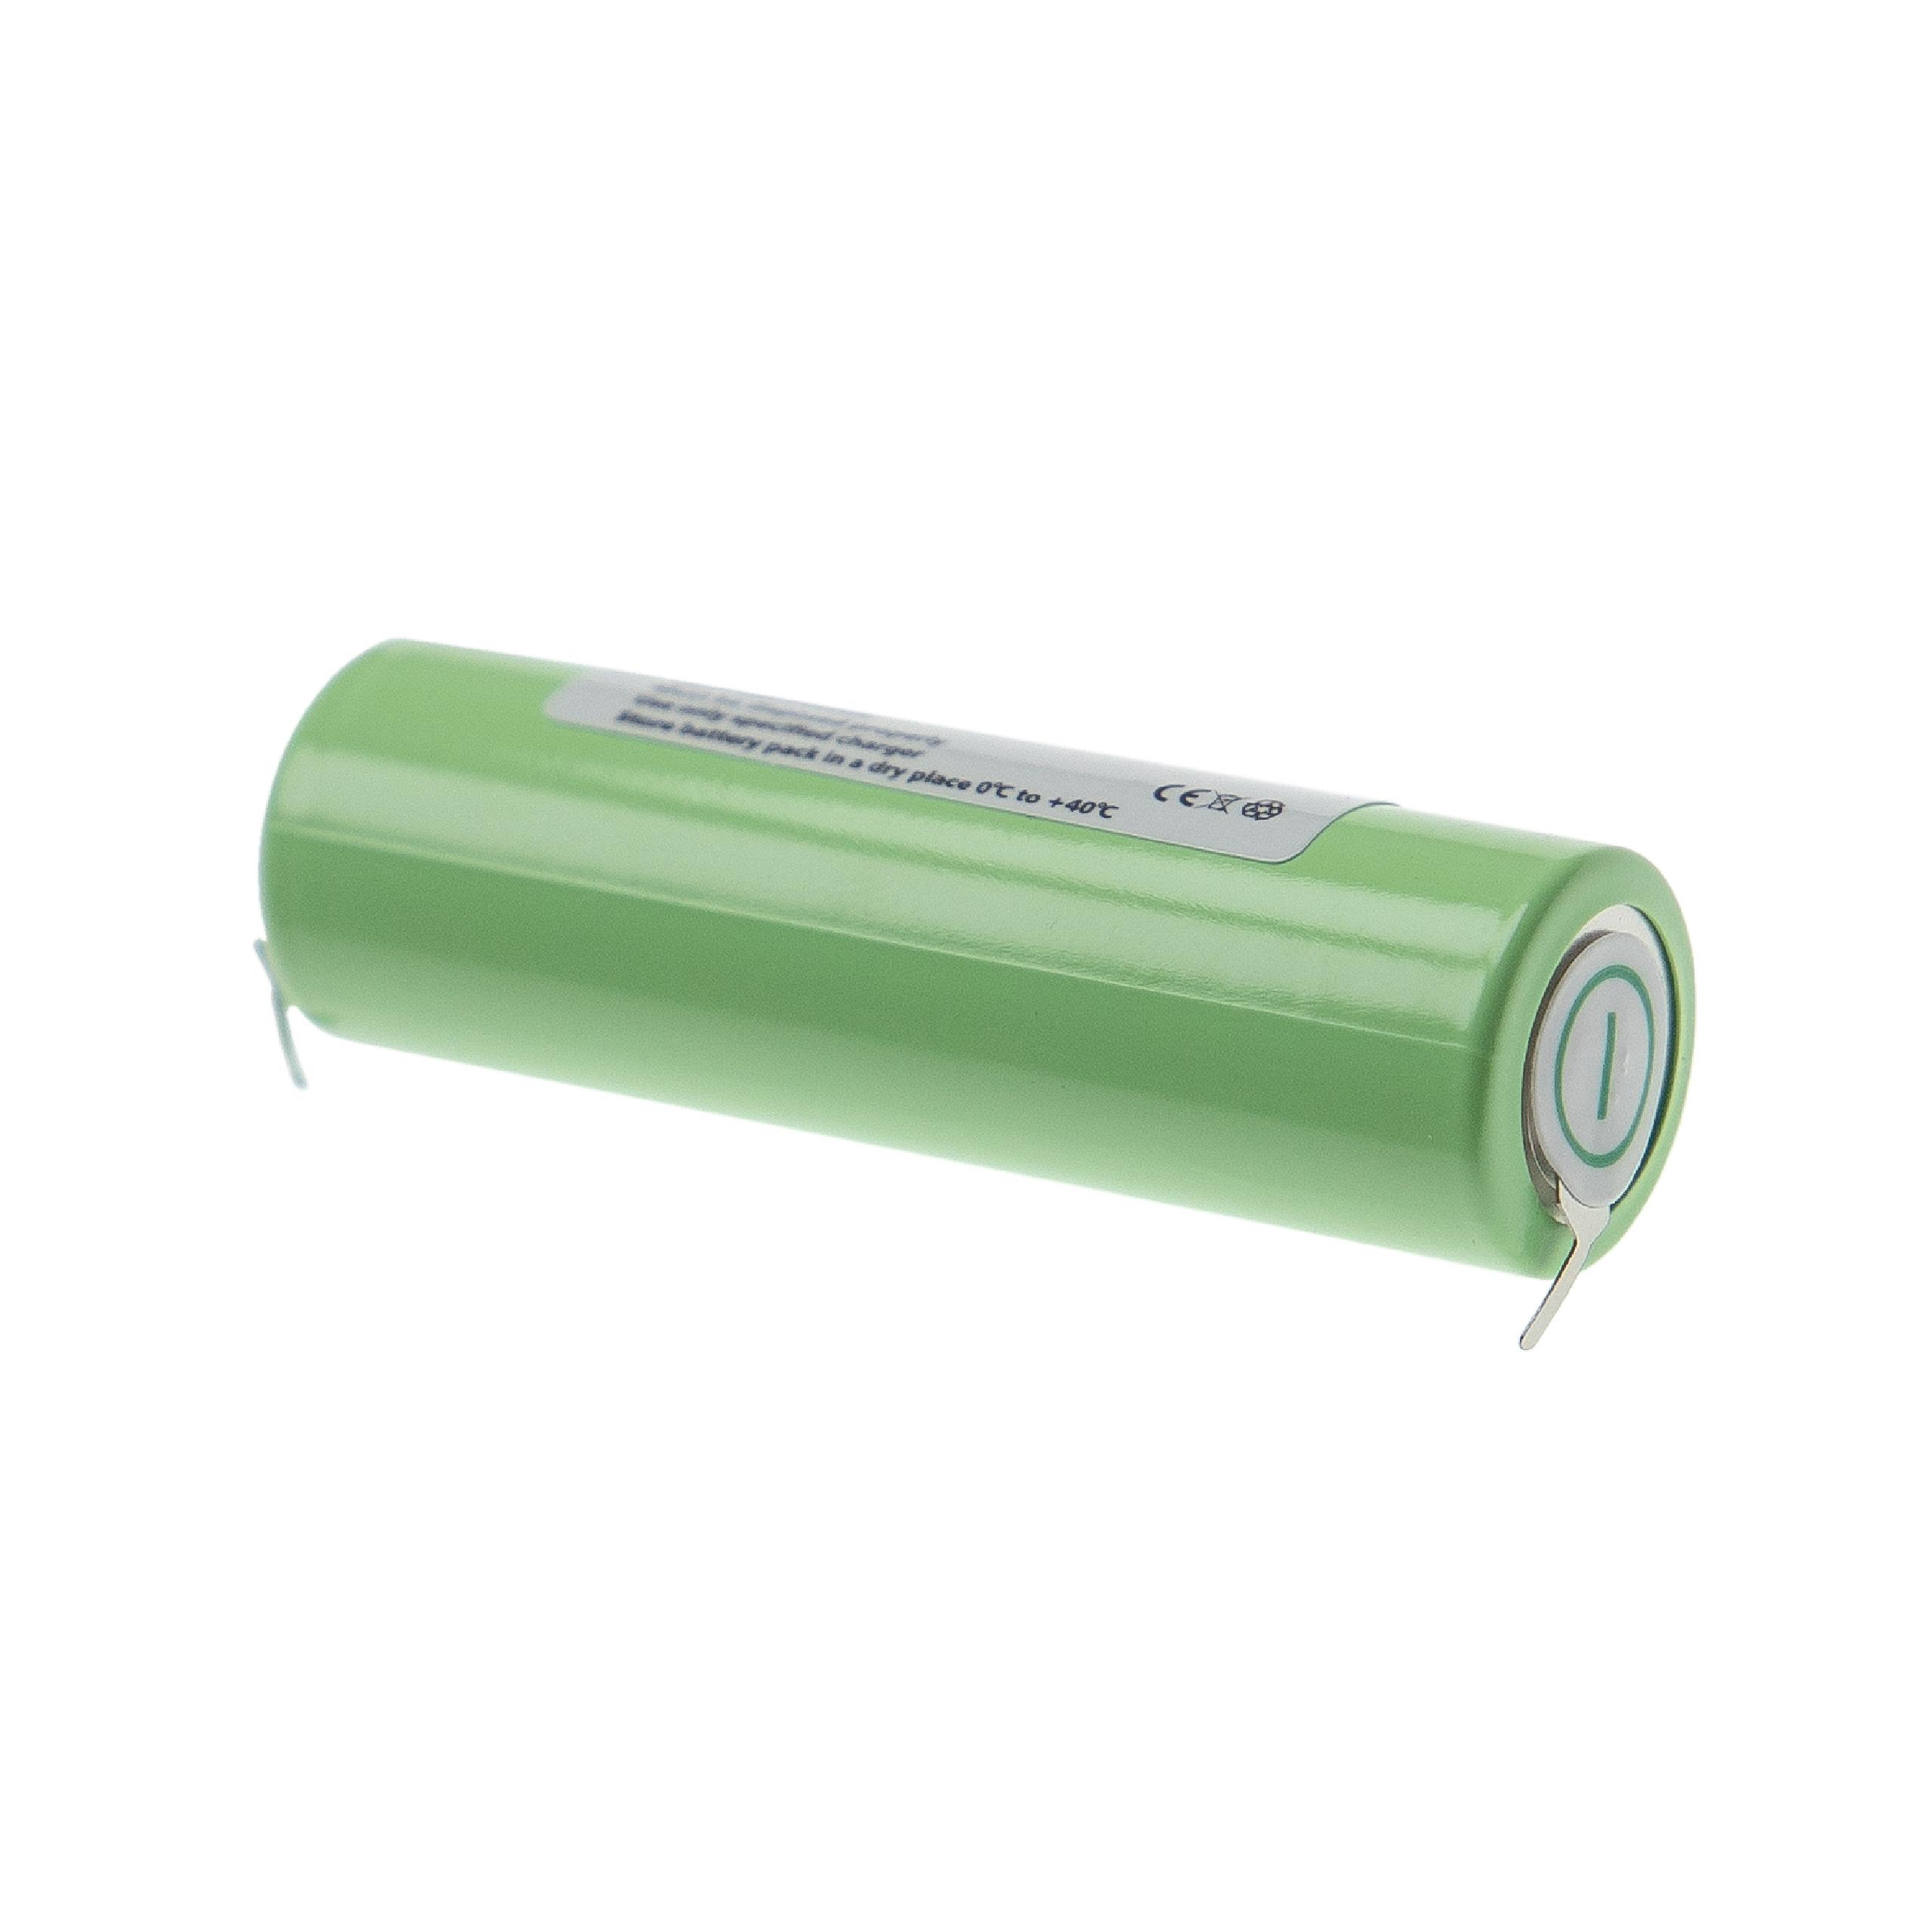 Batterie remplace Braun Typ 4510, Typ 4515, Typ 5601 pour rasoir électrique - 2500mAh 1,2V NiMH